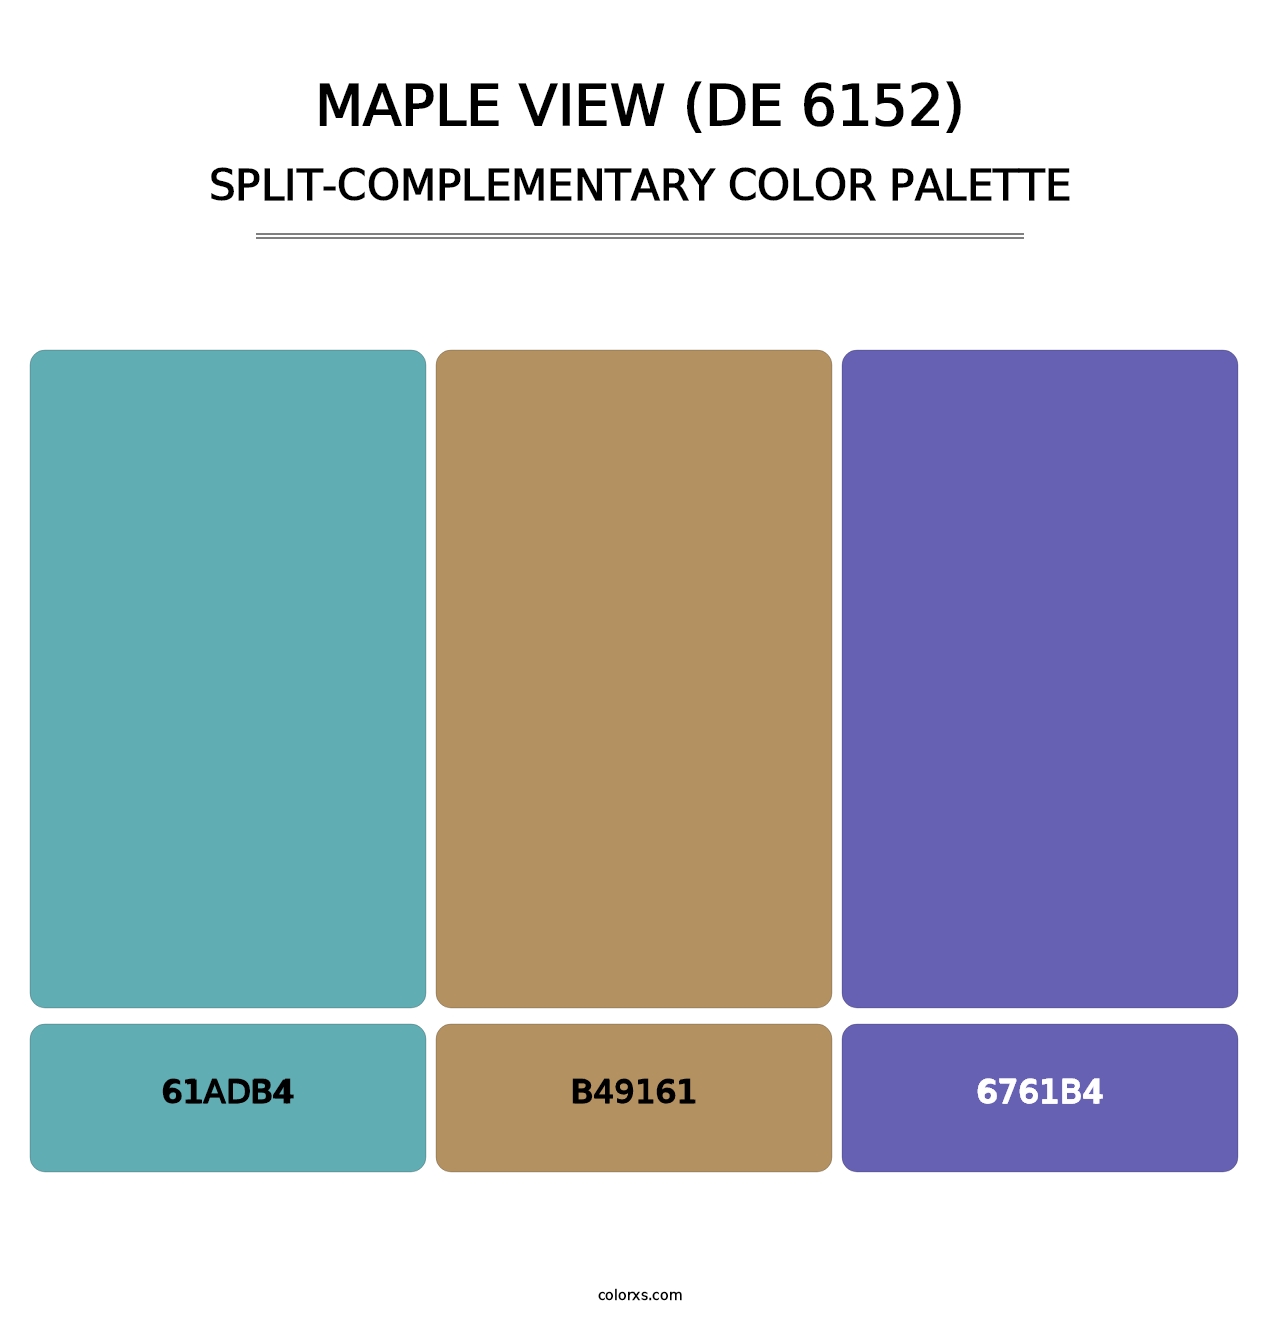 Maple View (DE 6152) - Split-Complementary Color Palette